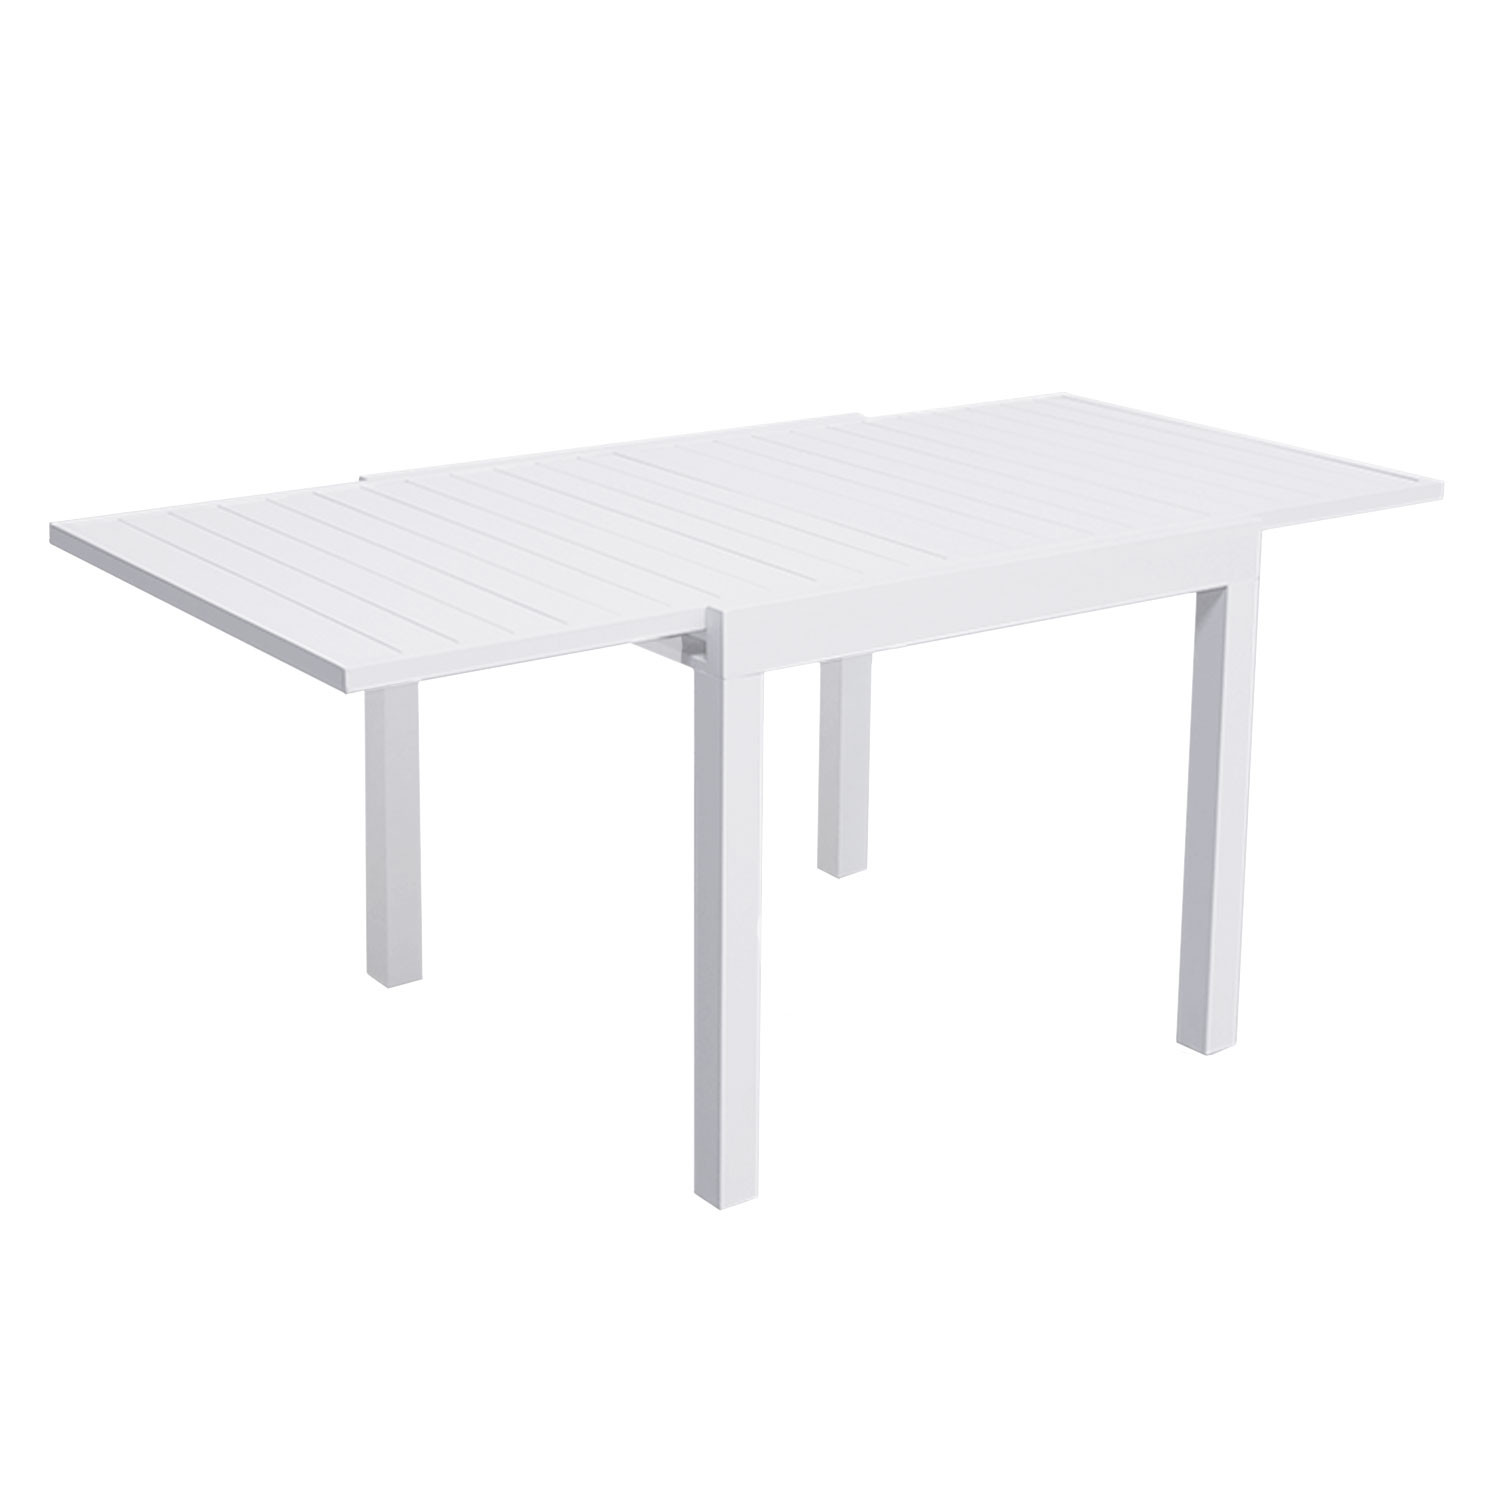 VENEZIA Set di mobili da giardino allungabili 90/180 in alluminio bianco - 8 posti a sedere